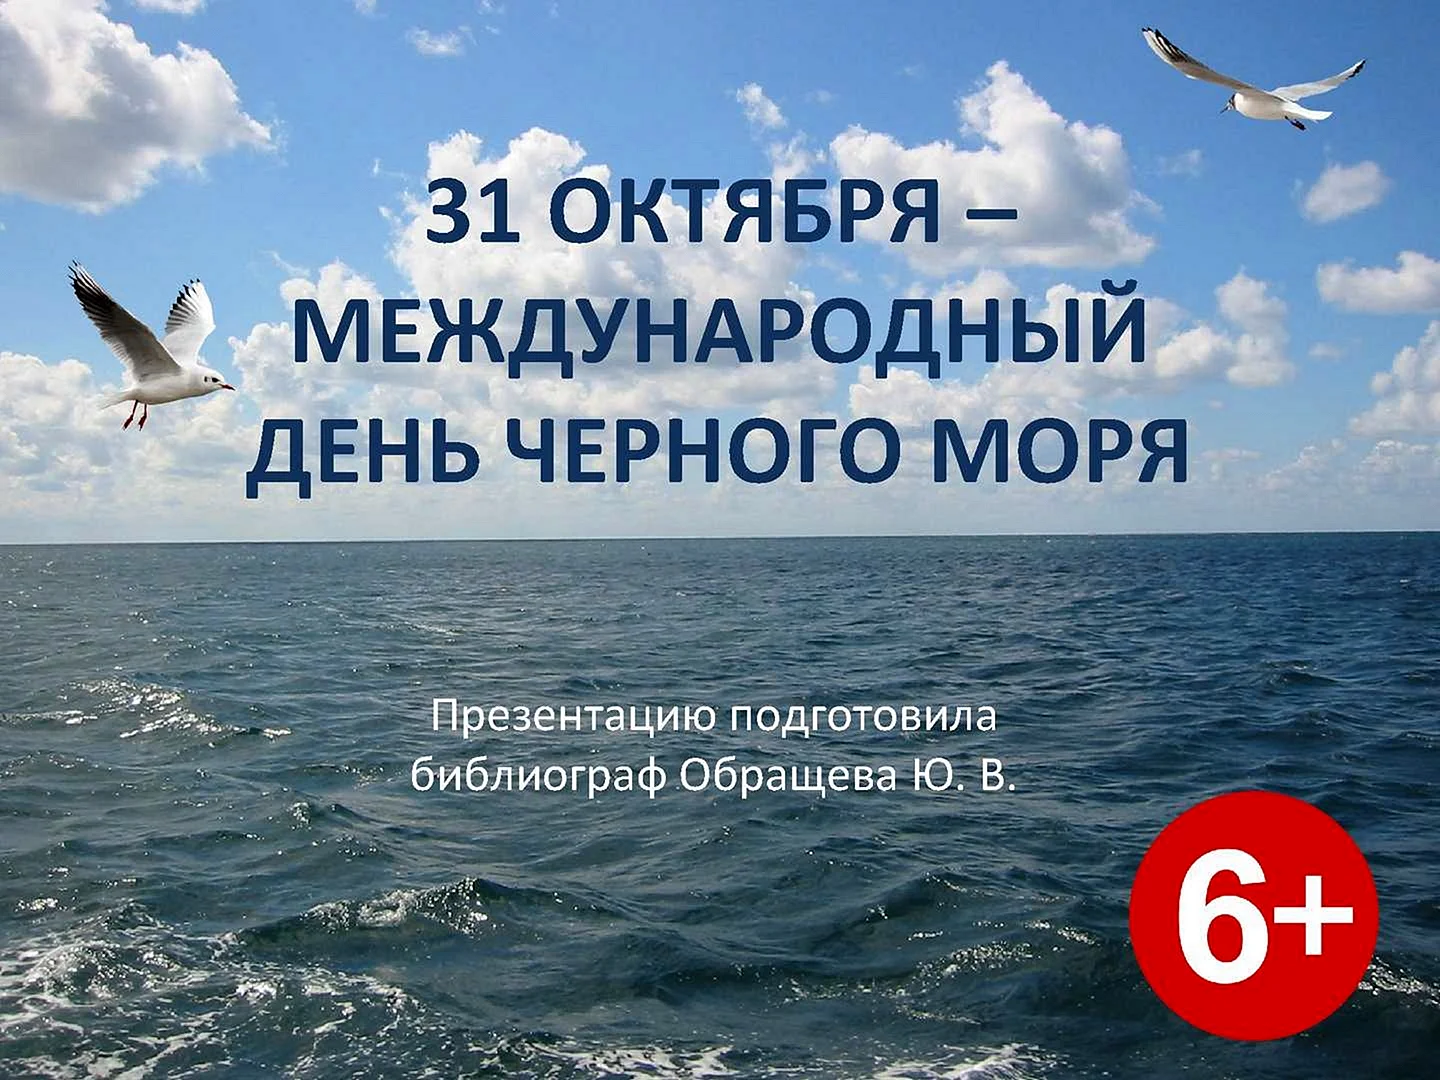 31 Октября день черного моря